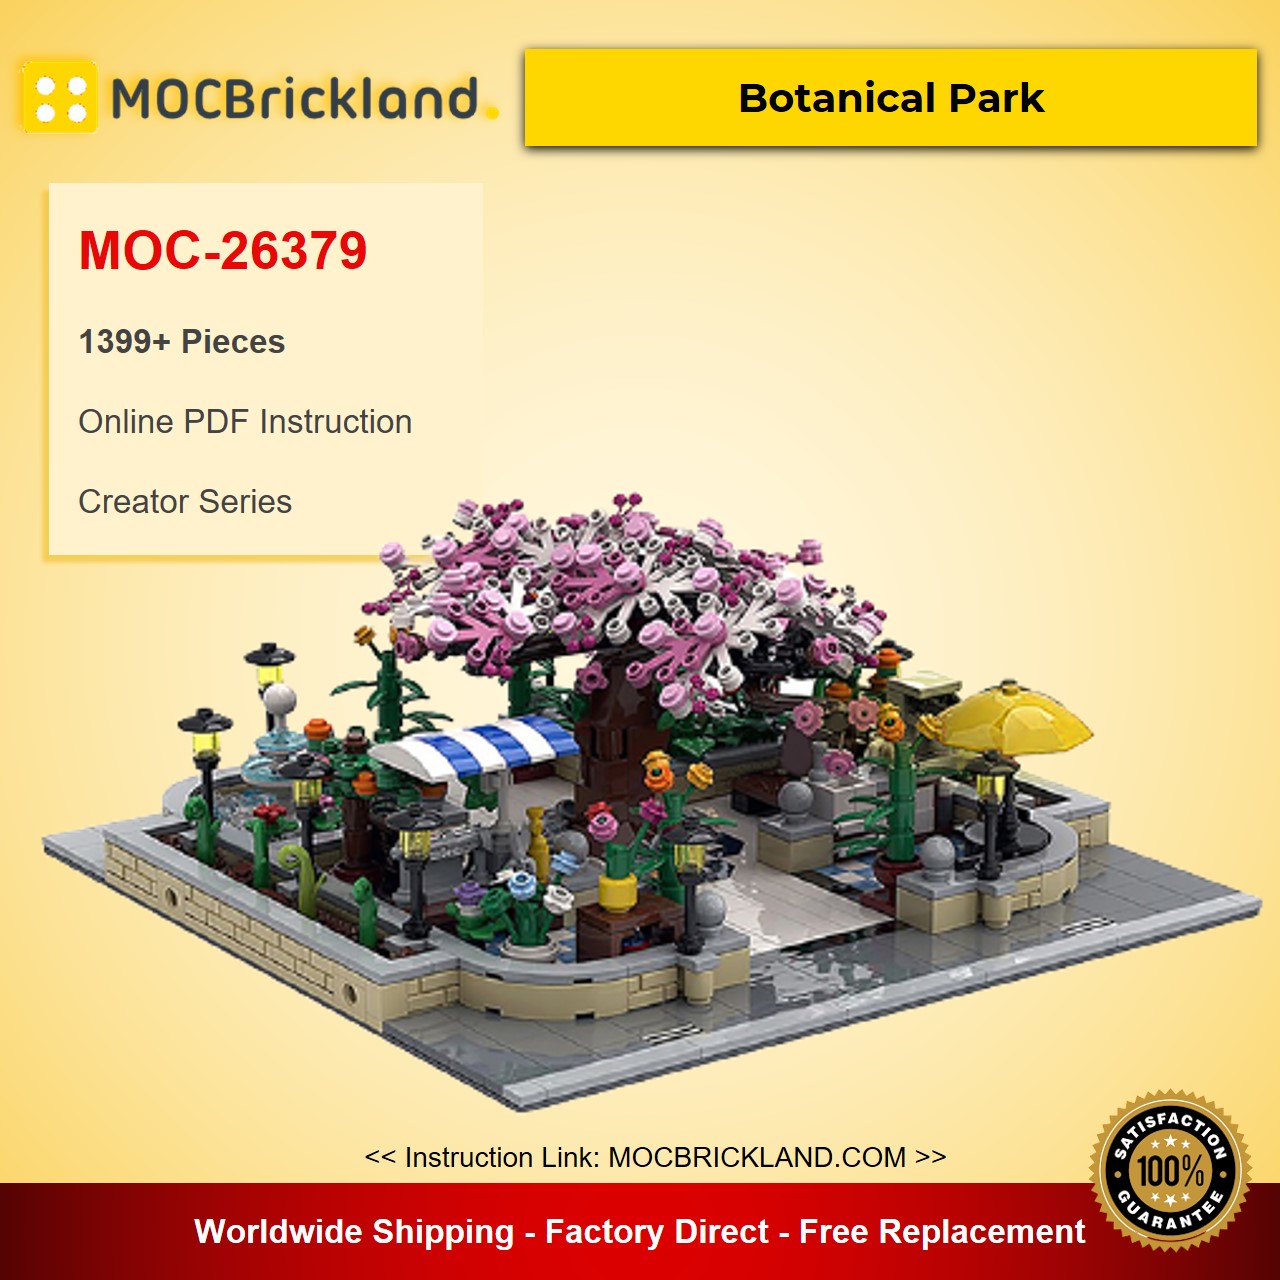 MOCBRICKLAND MOC-26379 Botanical Park